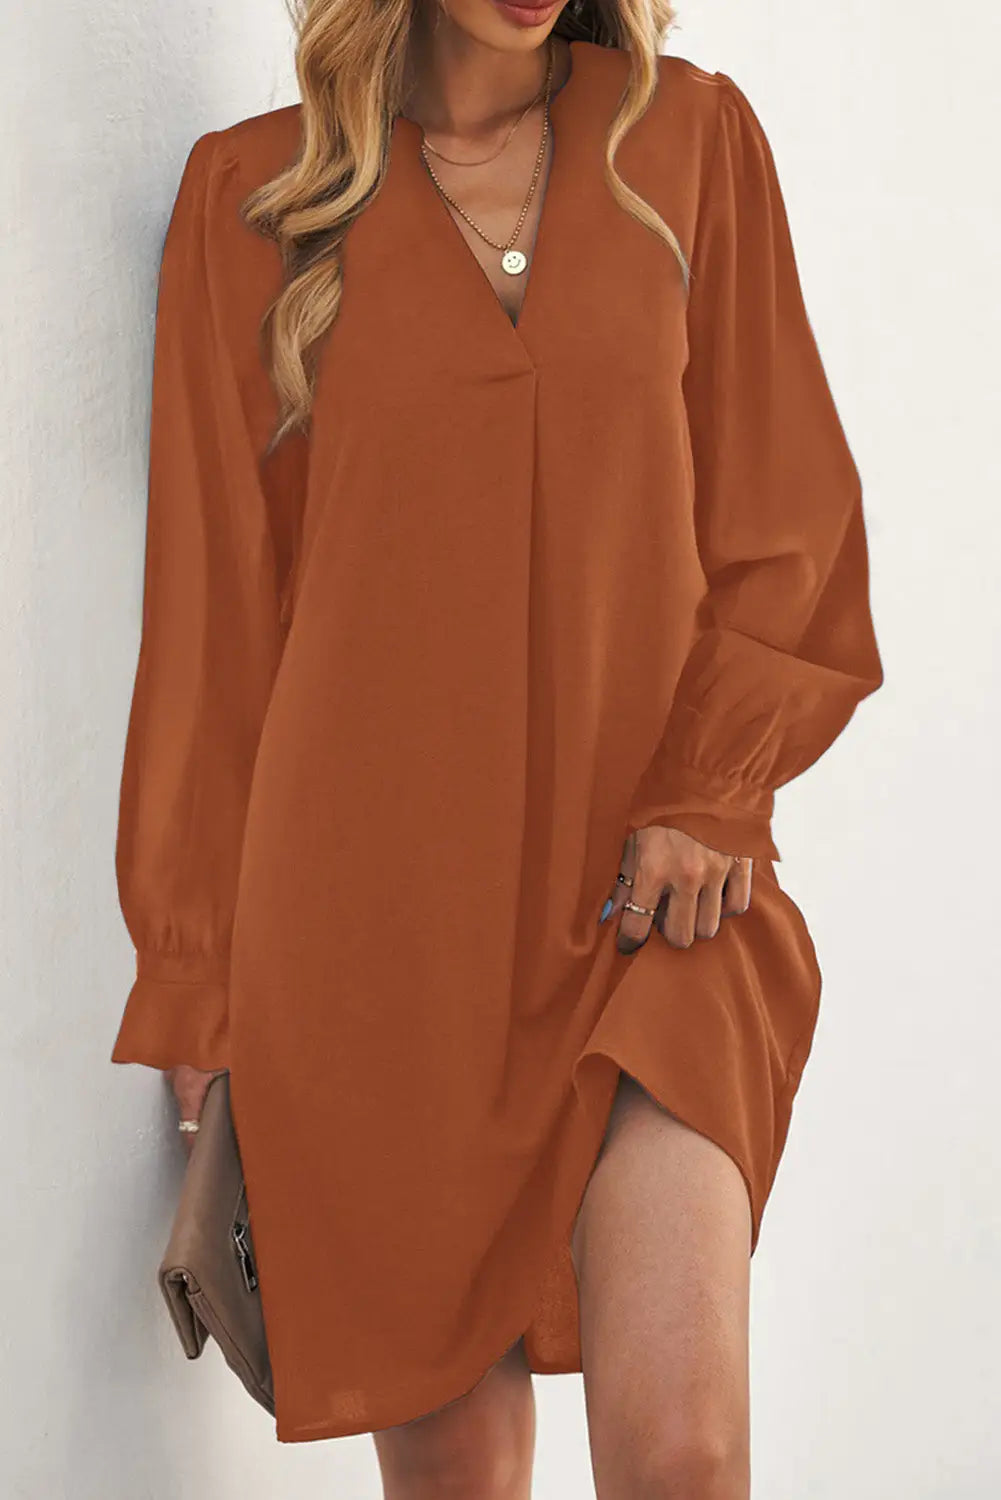 Black split v neck ruffled sleeves shirt dress - khaki / s / 100% polyester - mini dresses